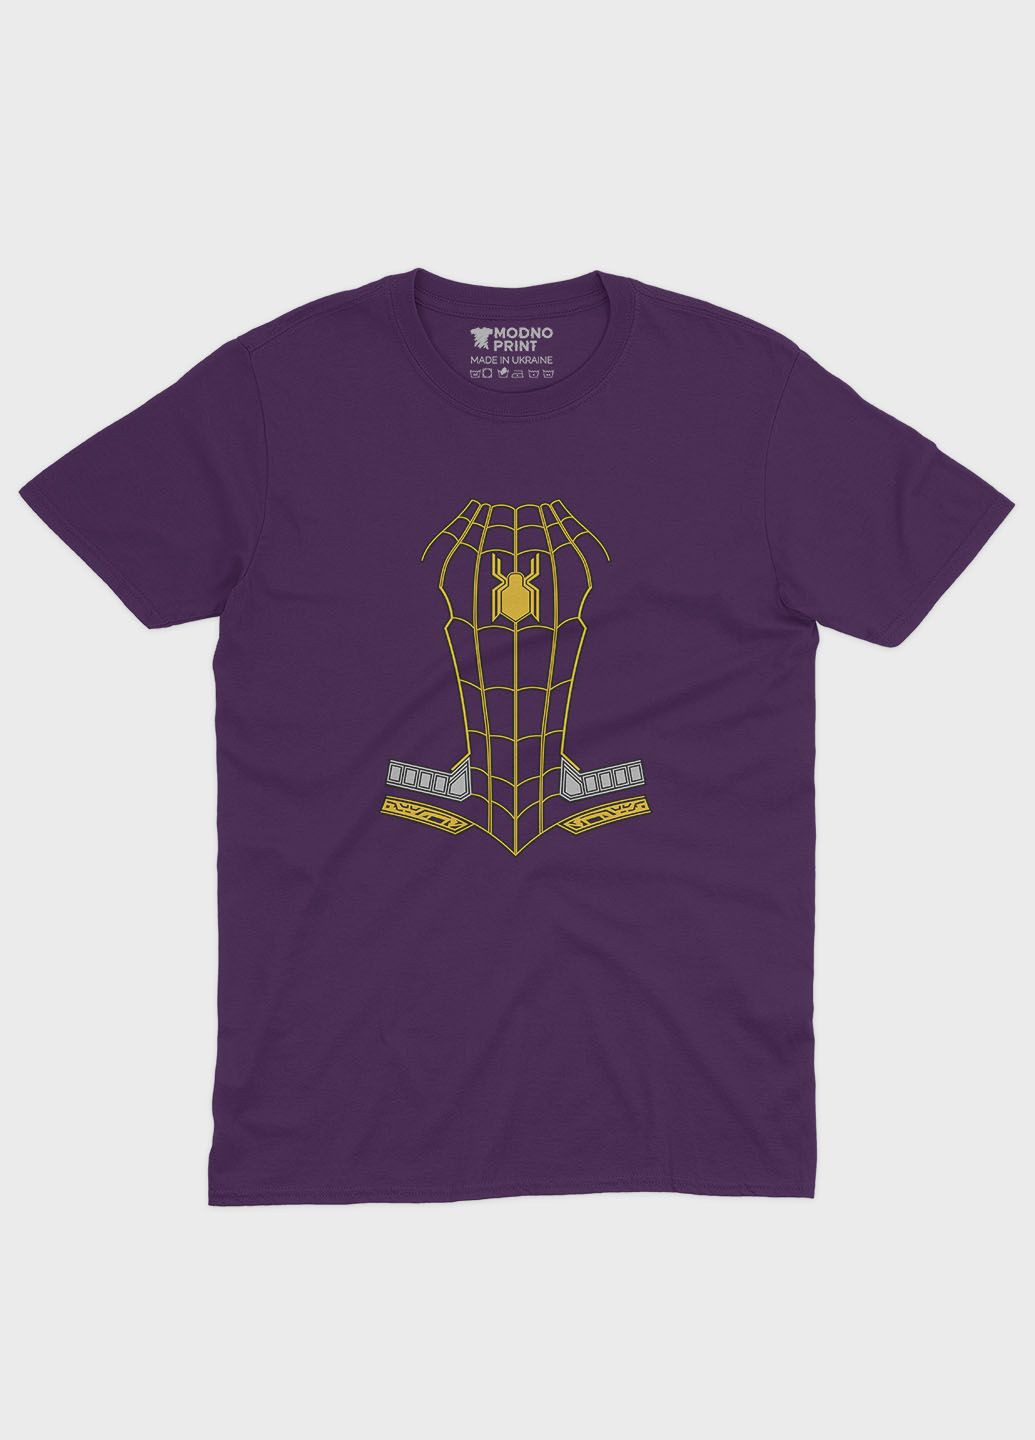 Фиолетовая демисезонная футболка для девочки с принтом супергероя - человек-паук (ts001-1-dby-006-014-083-g) Modno